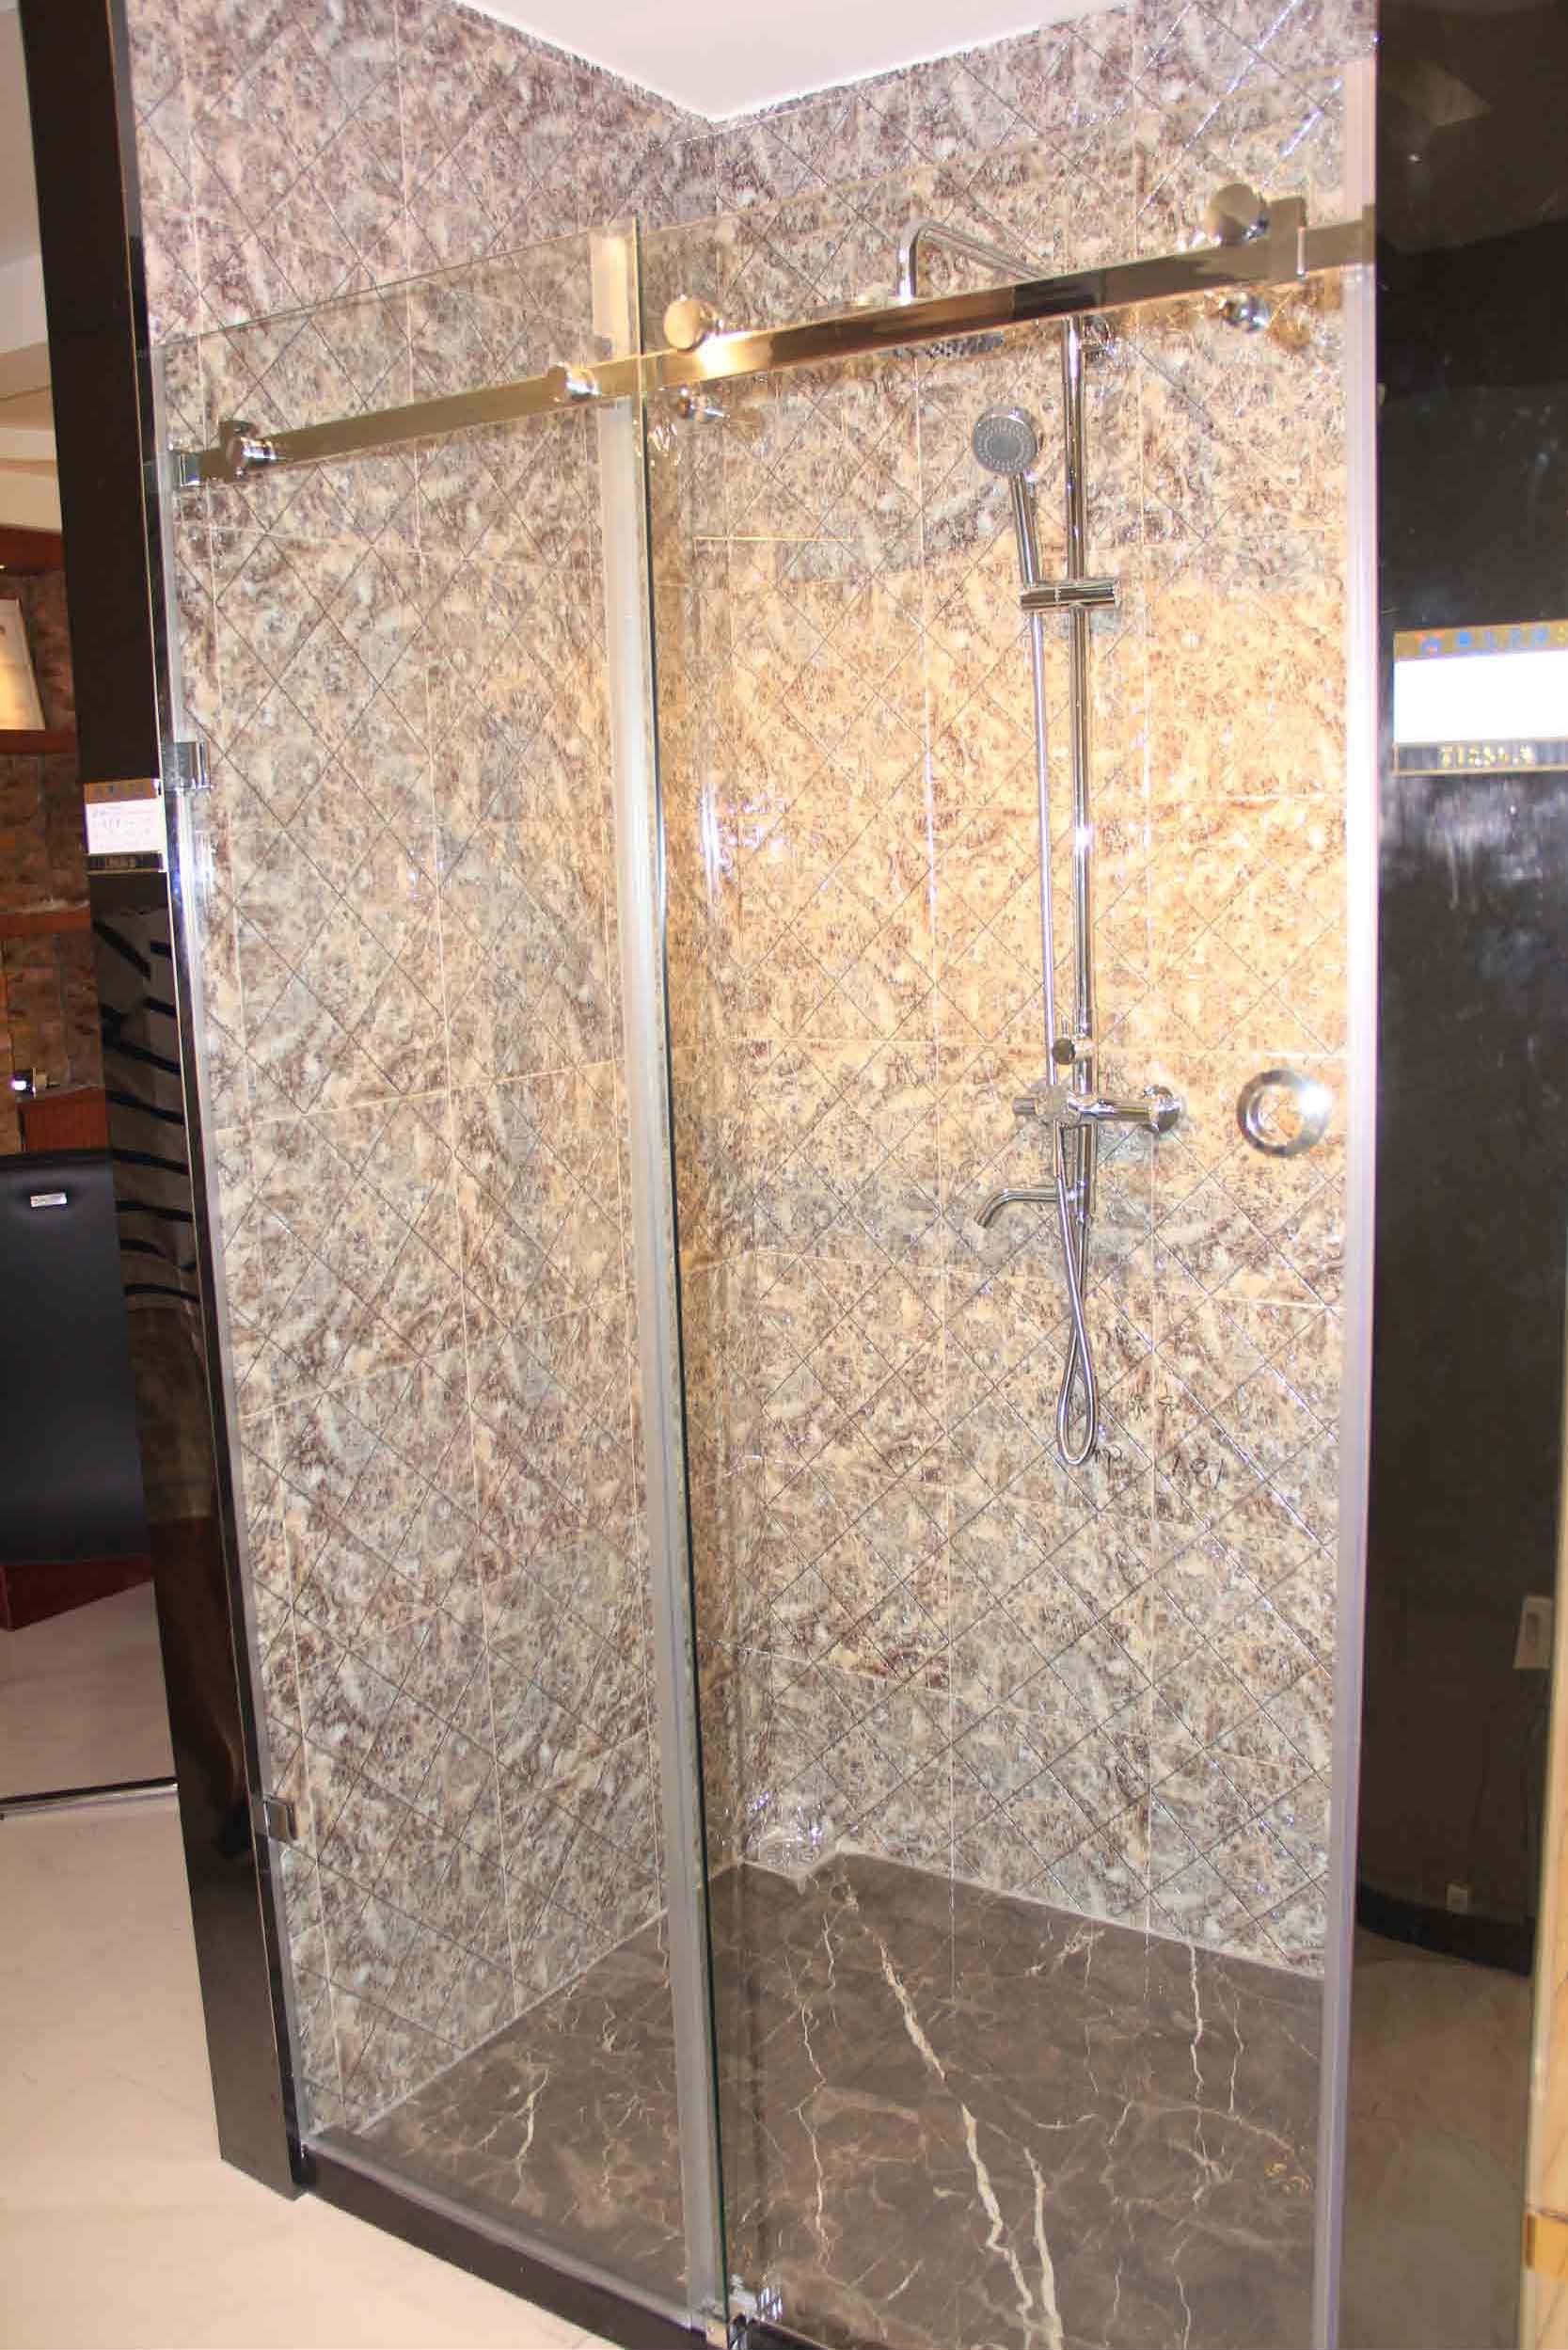 Moden door Design Bathroom Glass Door Simple showers enclosure bathroom